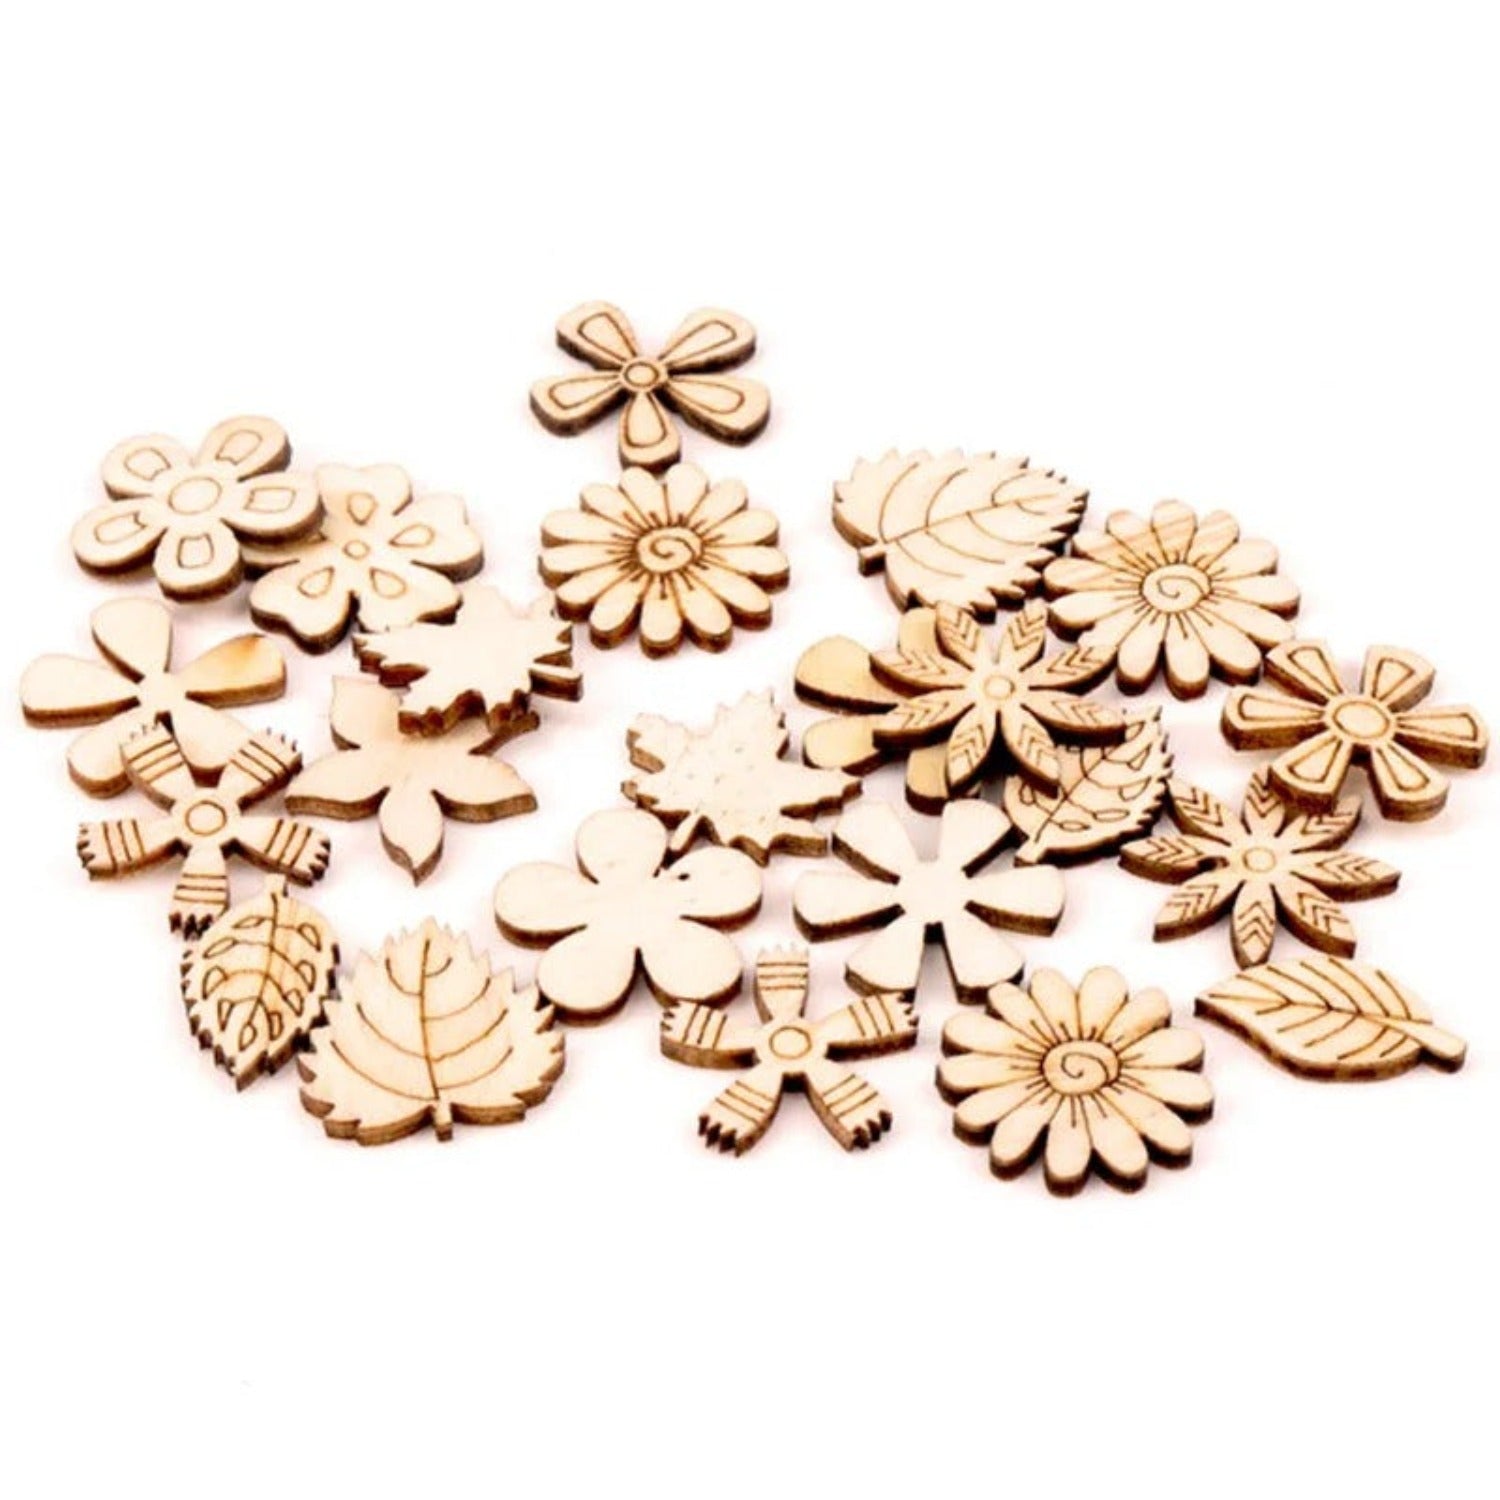 50pcs Flower Leaf Shapes Wooden Forms Scrapbooking Craft DIY 20mm